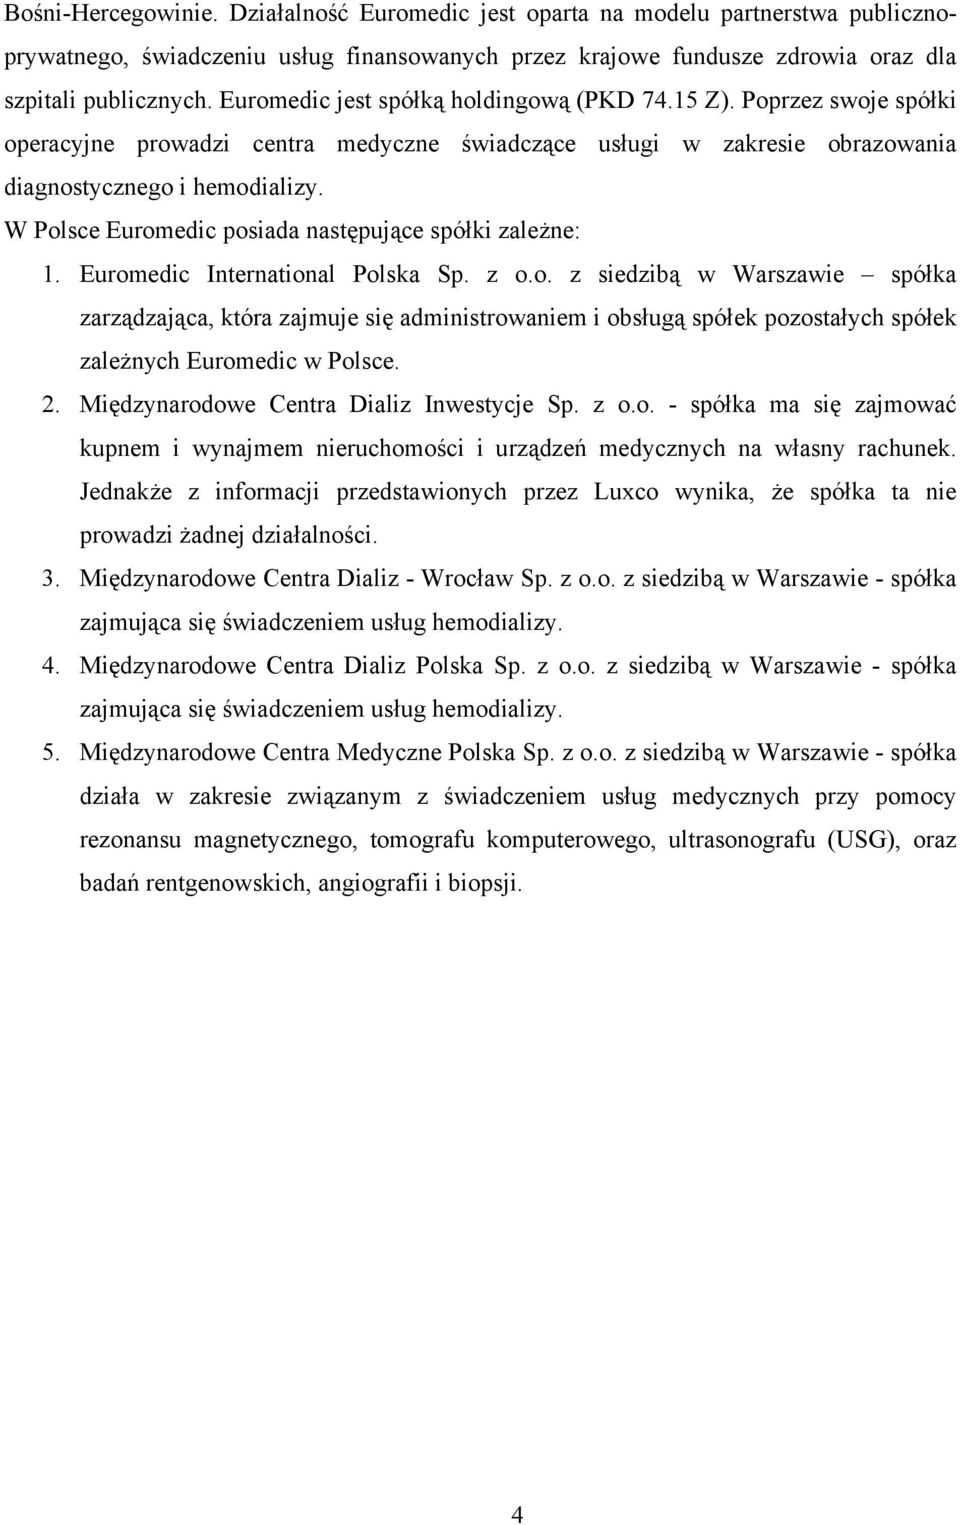 W Polsce Euromedic posiada następujące spółki zależne: 1. Euromedic International Polska Sp. z o.o. z siedzibą w Warszawie spółka zarządzająca, która zajmuje się administrowaniem i obsługą spółek pozostałych spółek zależnych Euromedic w Polsce.